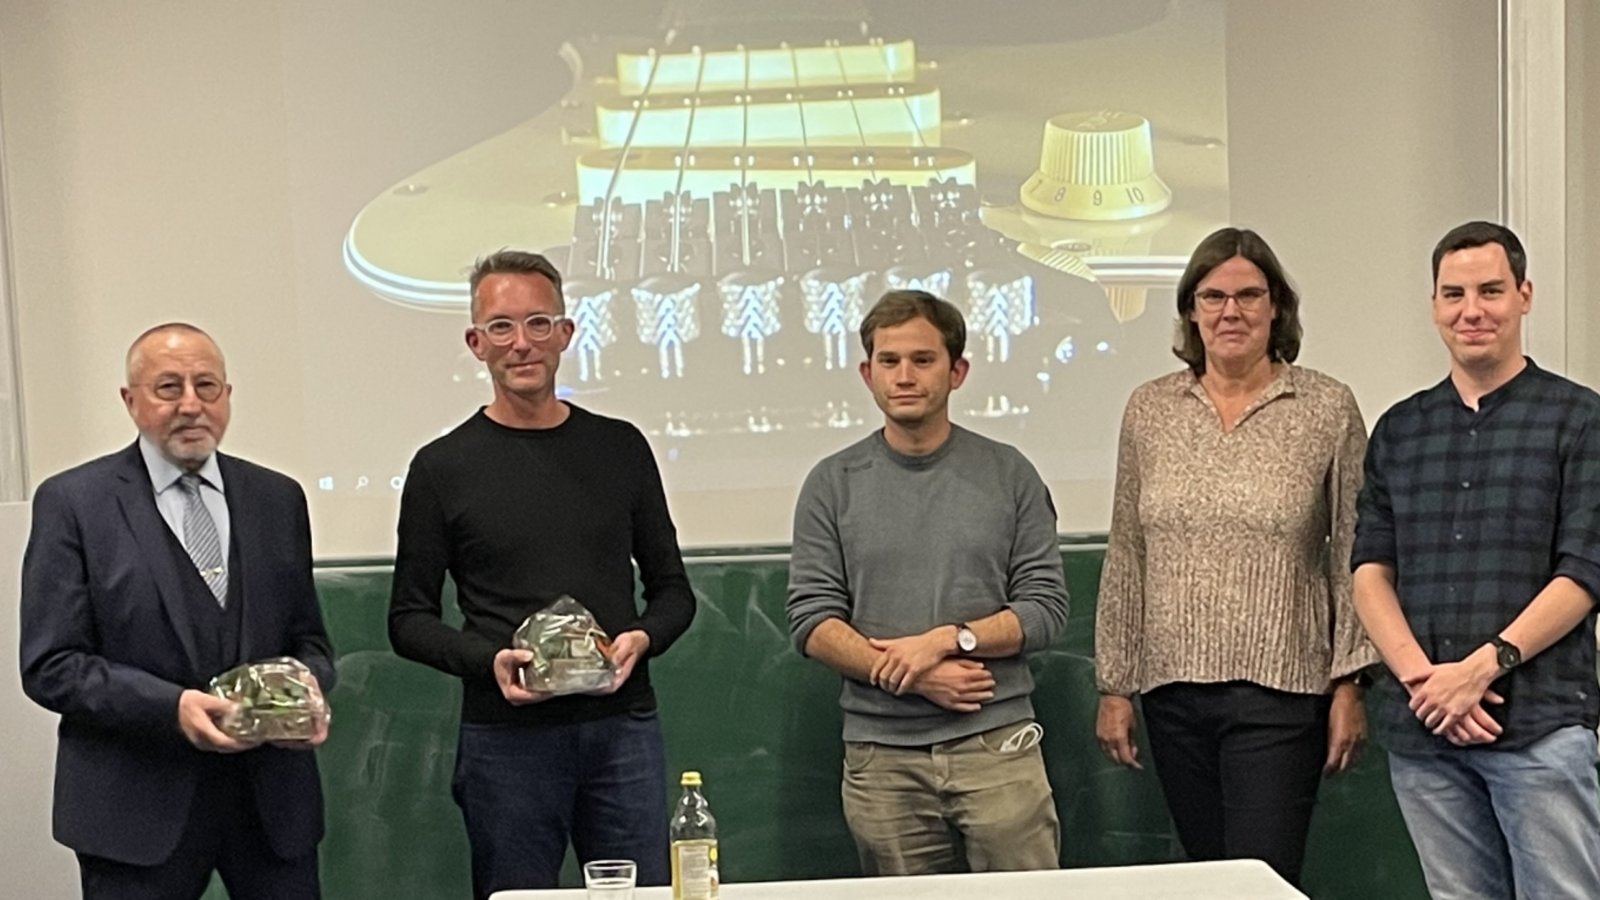 NwT-Lehrerin Cornelia Brauer und ihre beiden Kollegen Maximilian Danczyk und Lucas Zimmermann bedanken sich bei den beiden Referenten Norbert Schröter (li.) und Dr. Alexander Hub. p